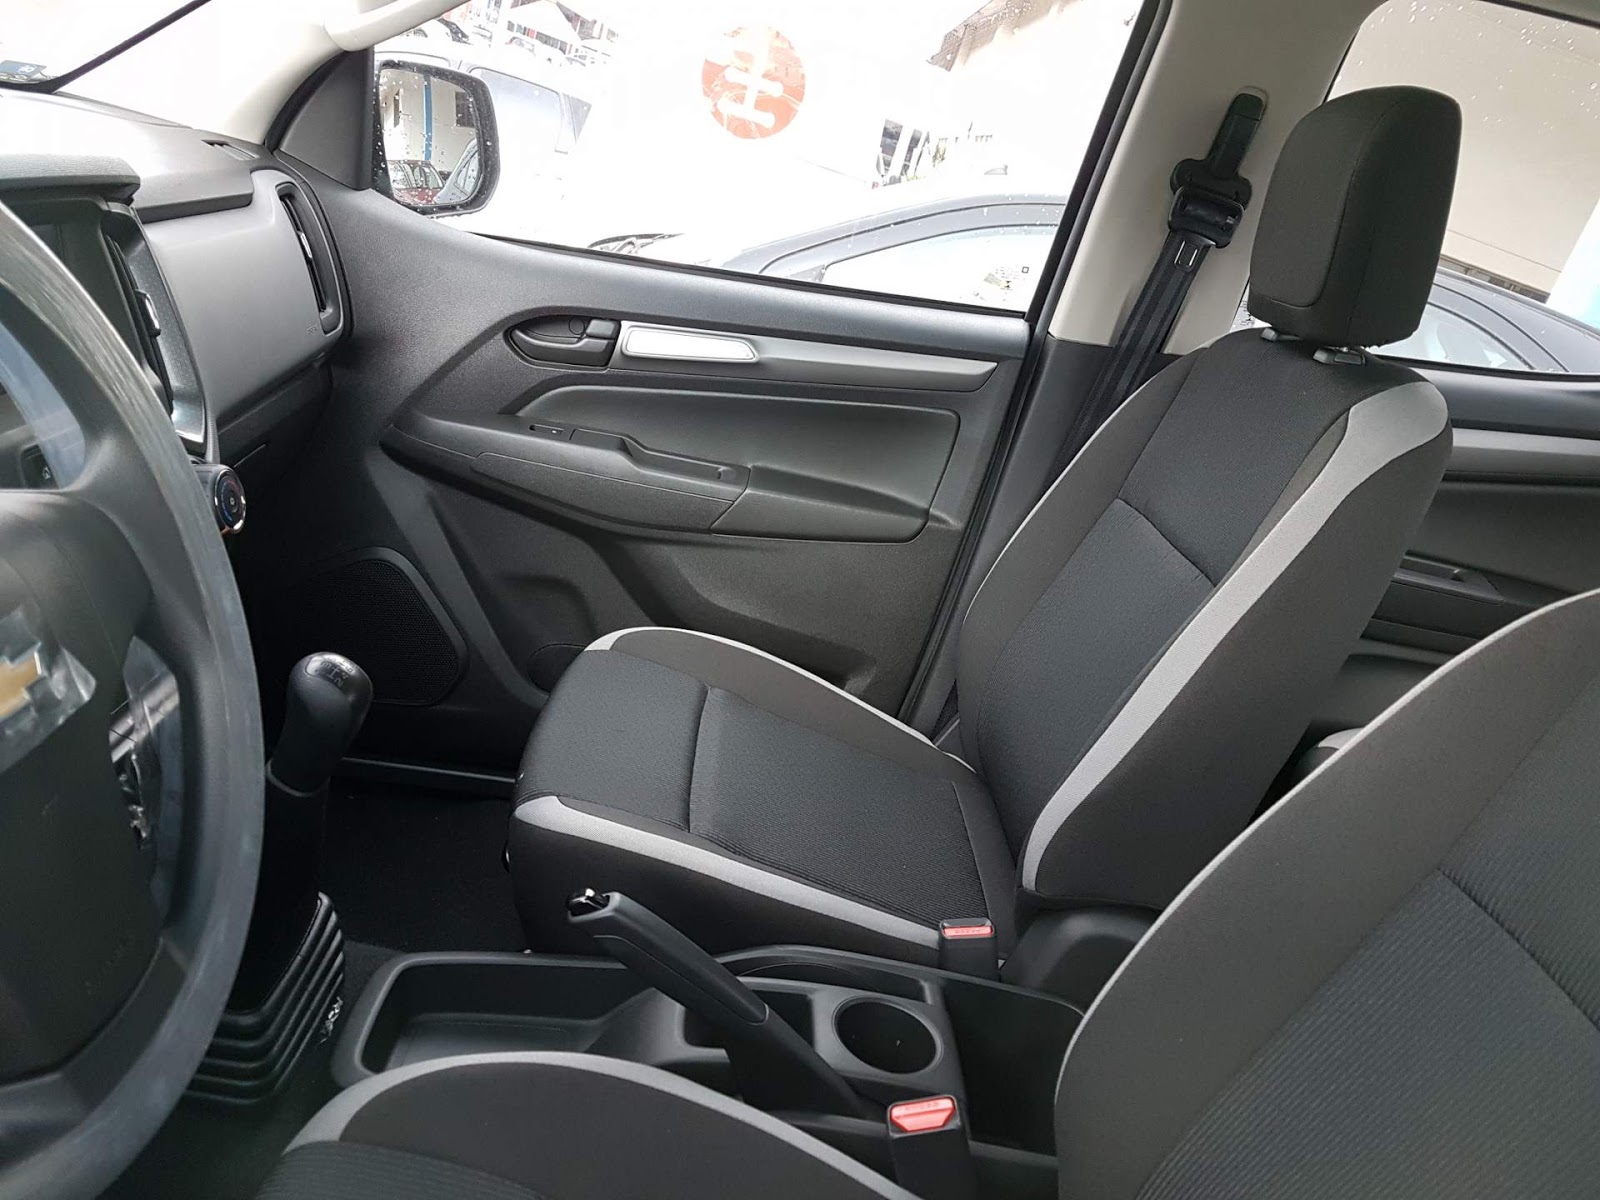 S10 Advantage - interior, bancos dianteiros